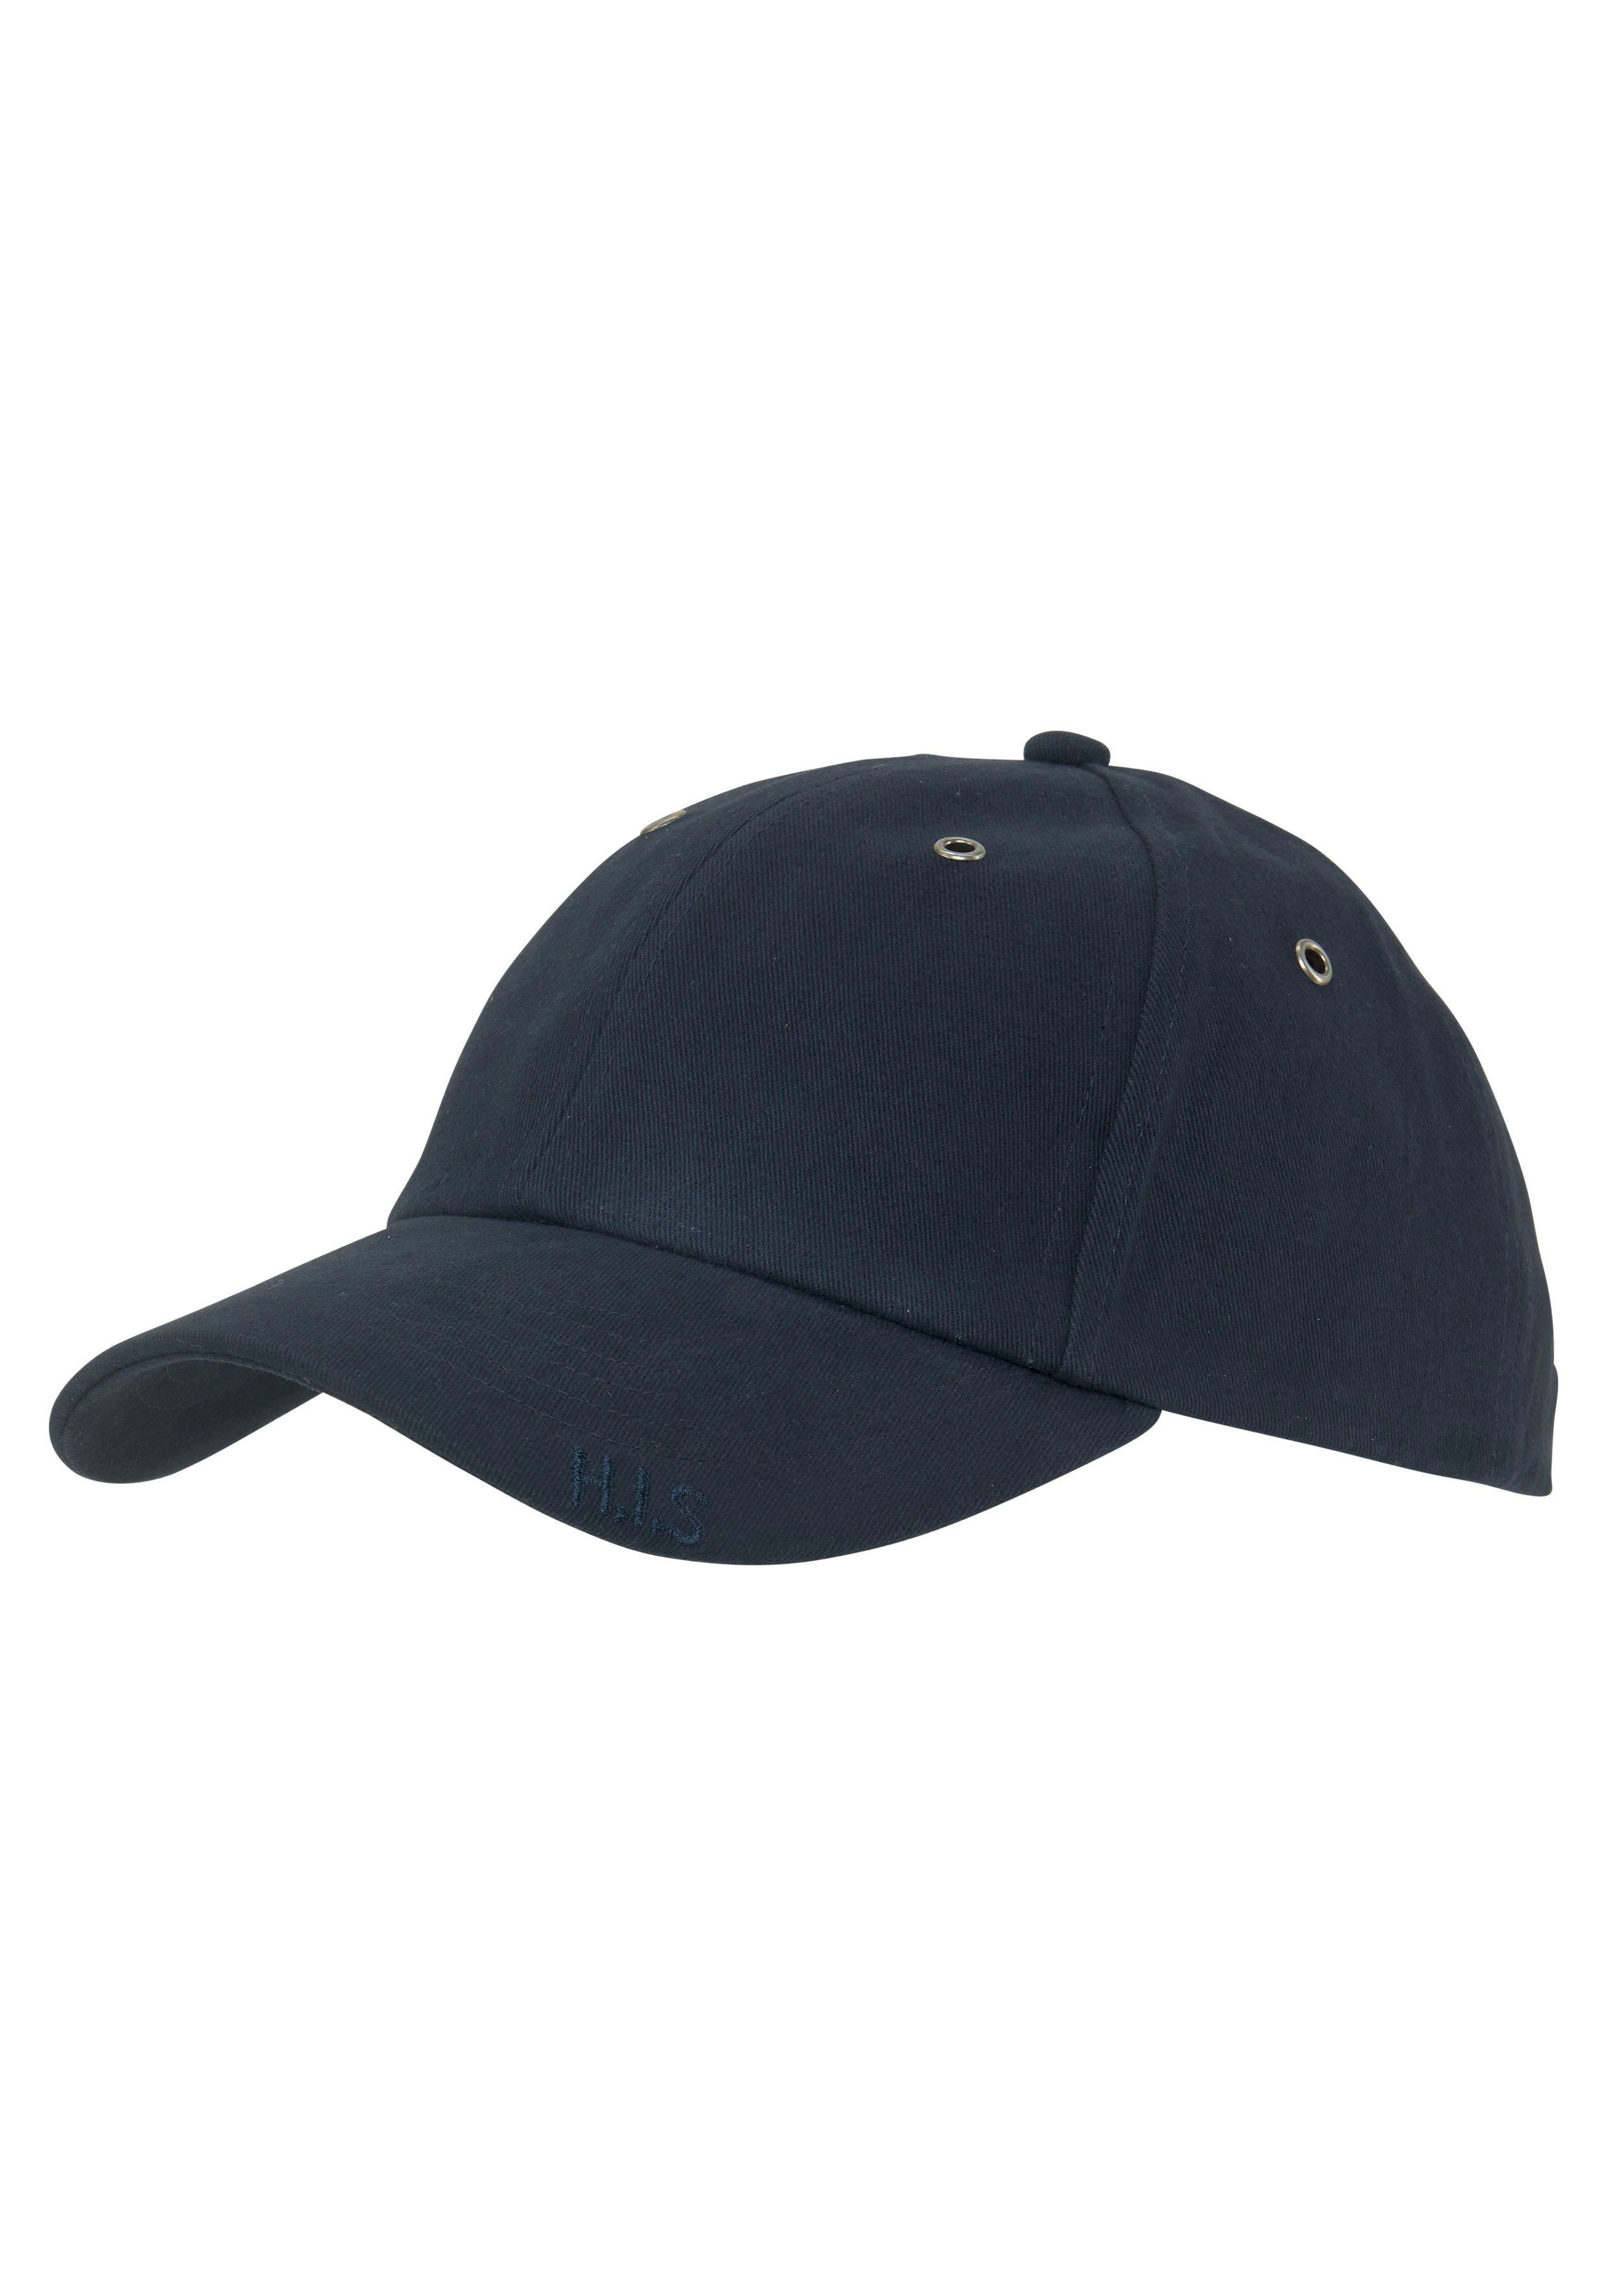 England Cap mit Stick Baseballcap Basecap Kappe Mütze Schrift schwarz Fire TOP 